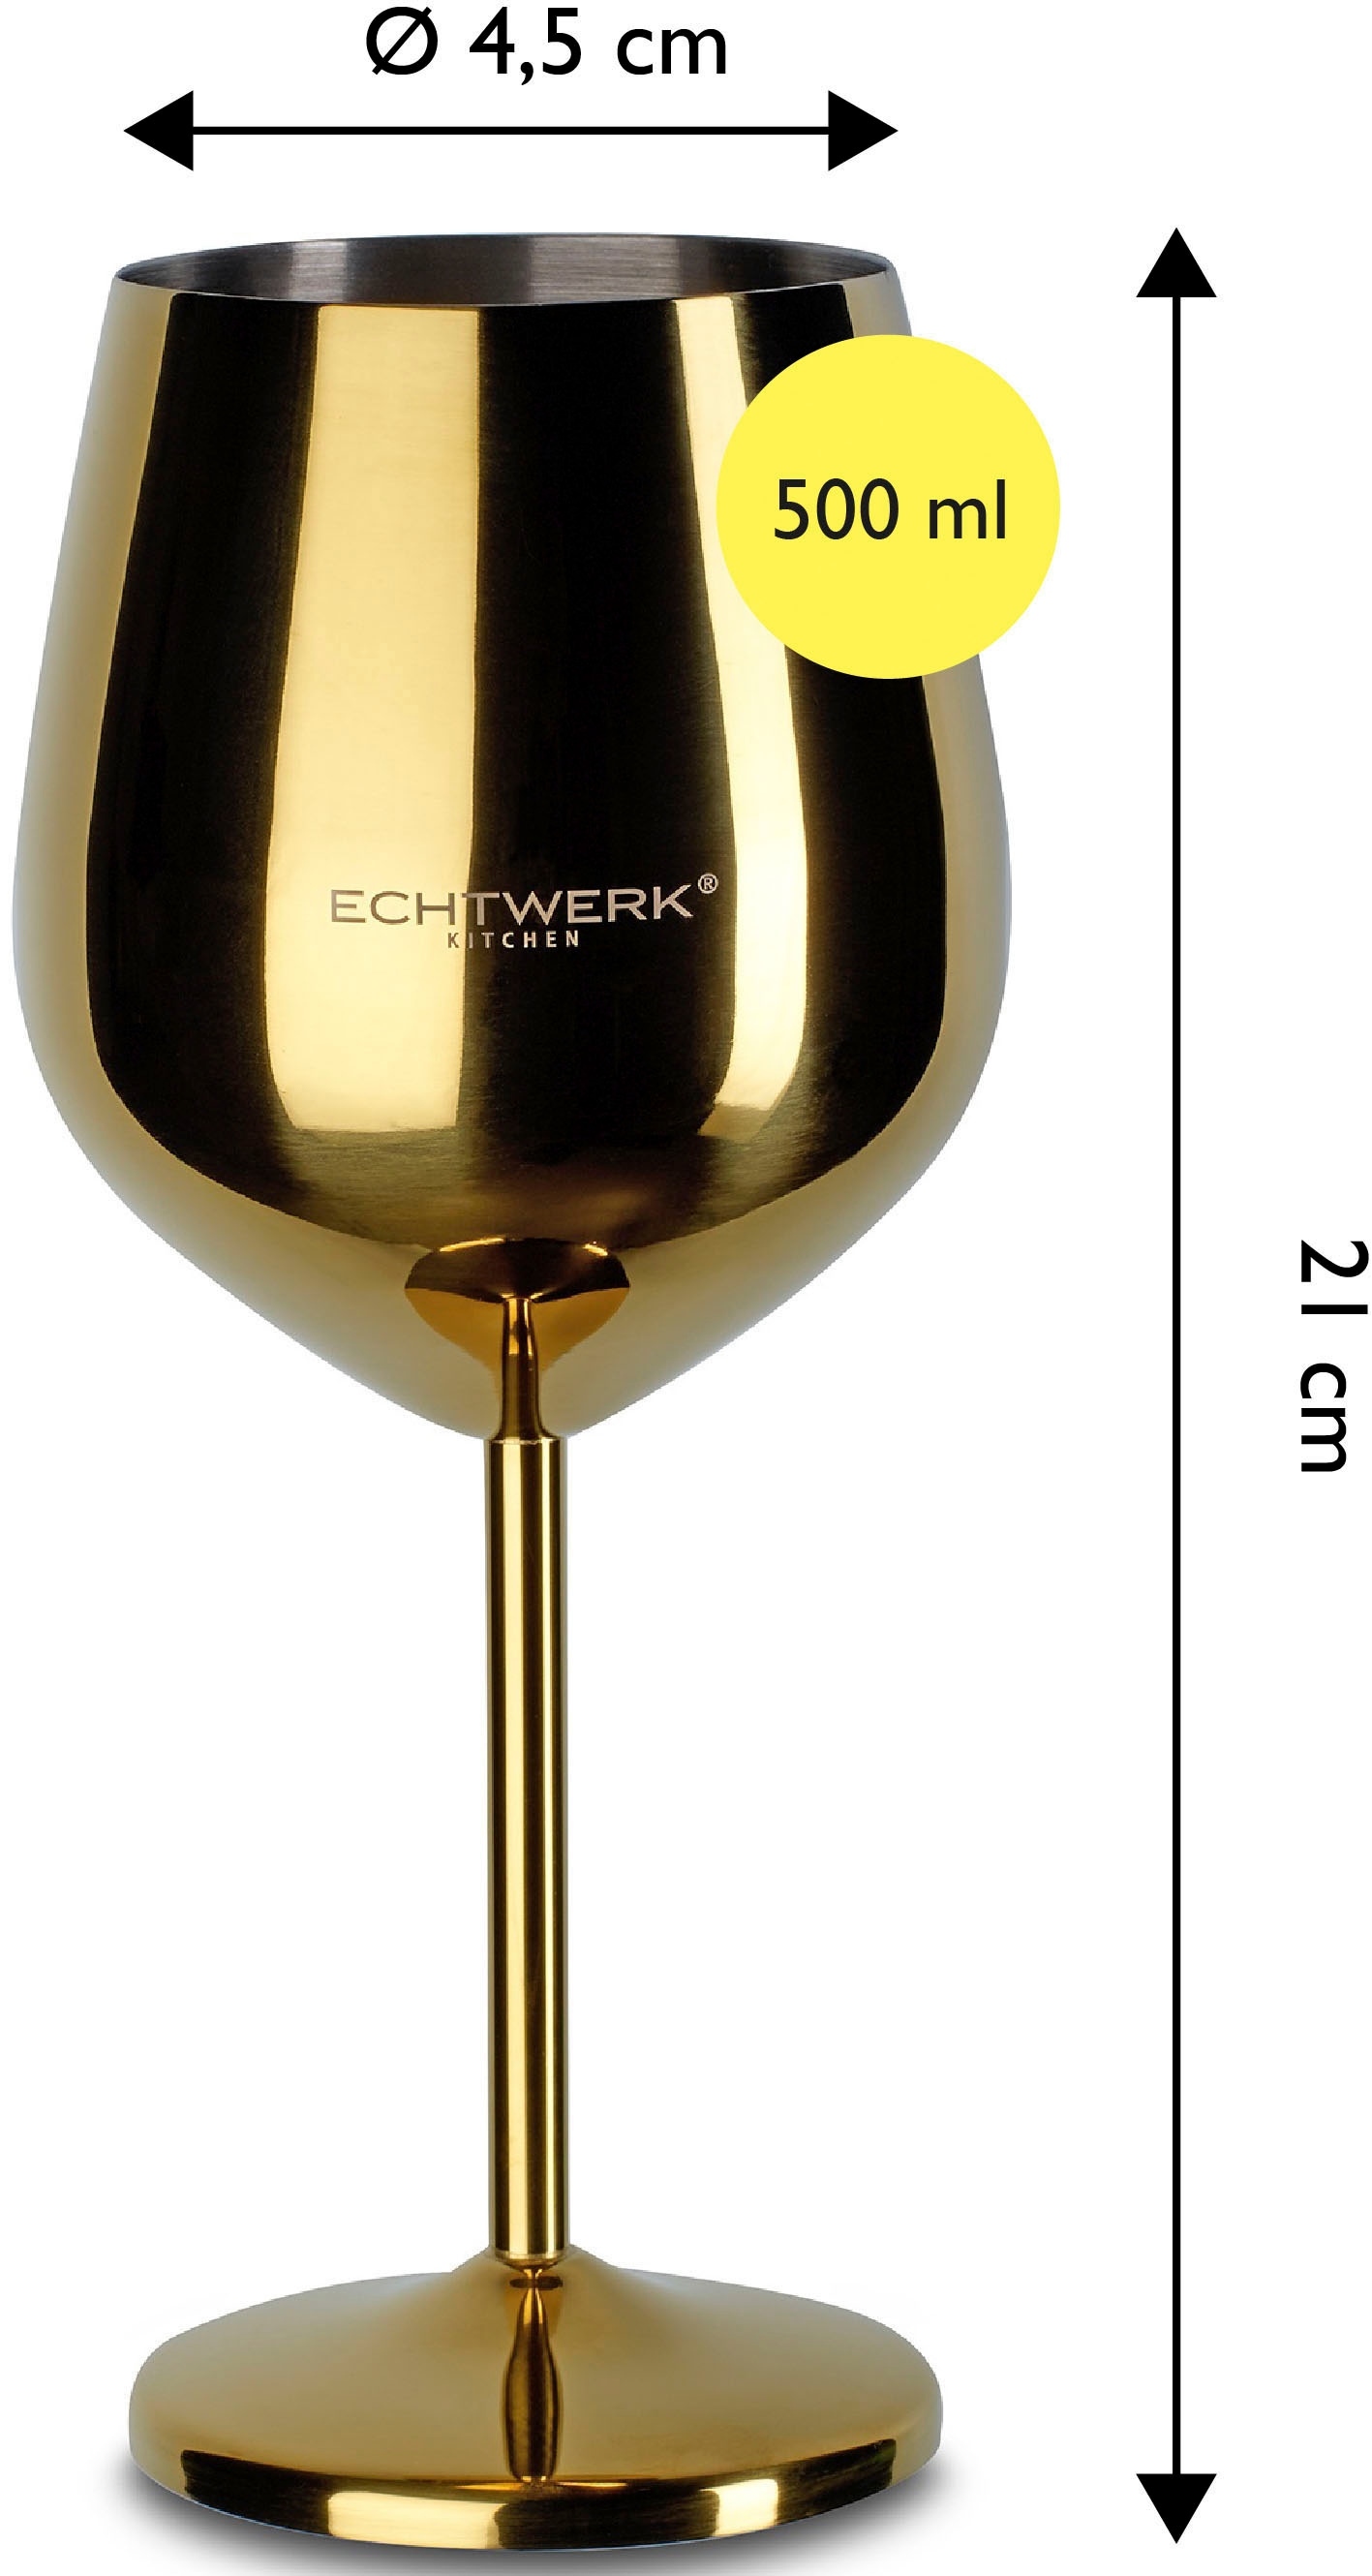 ECHTWERK Weinglas, (Set, 2 tlg.), PVD Beschichtung, 2-teilig, 0,5 Liter